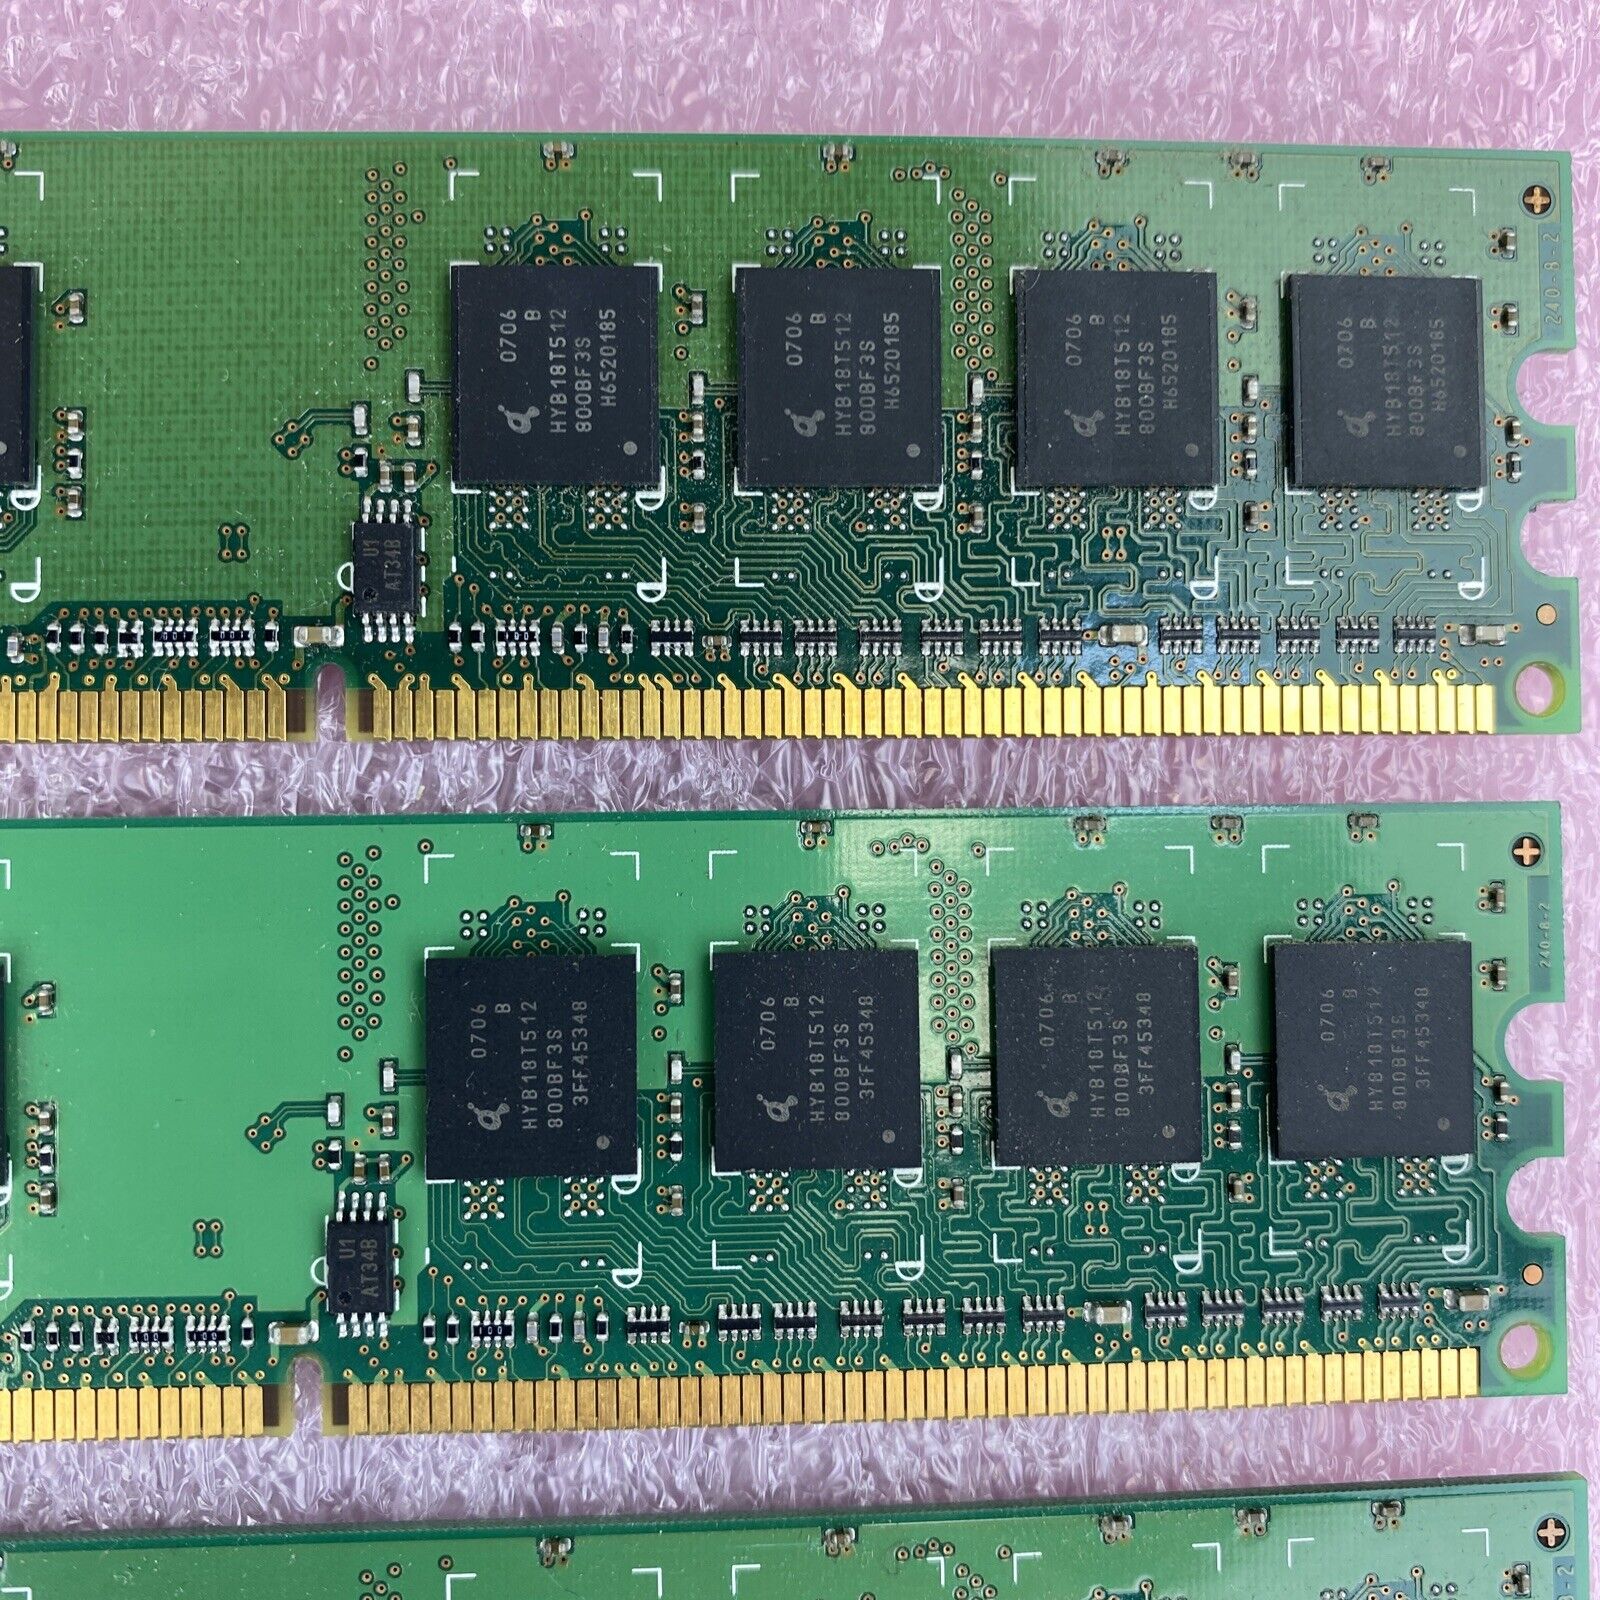 4x 512MB HYS64T64000HU-3S-B Infineon PC2-5300 DDR2-667Mhz non-ECC CL5 240-Pin